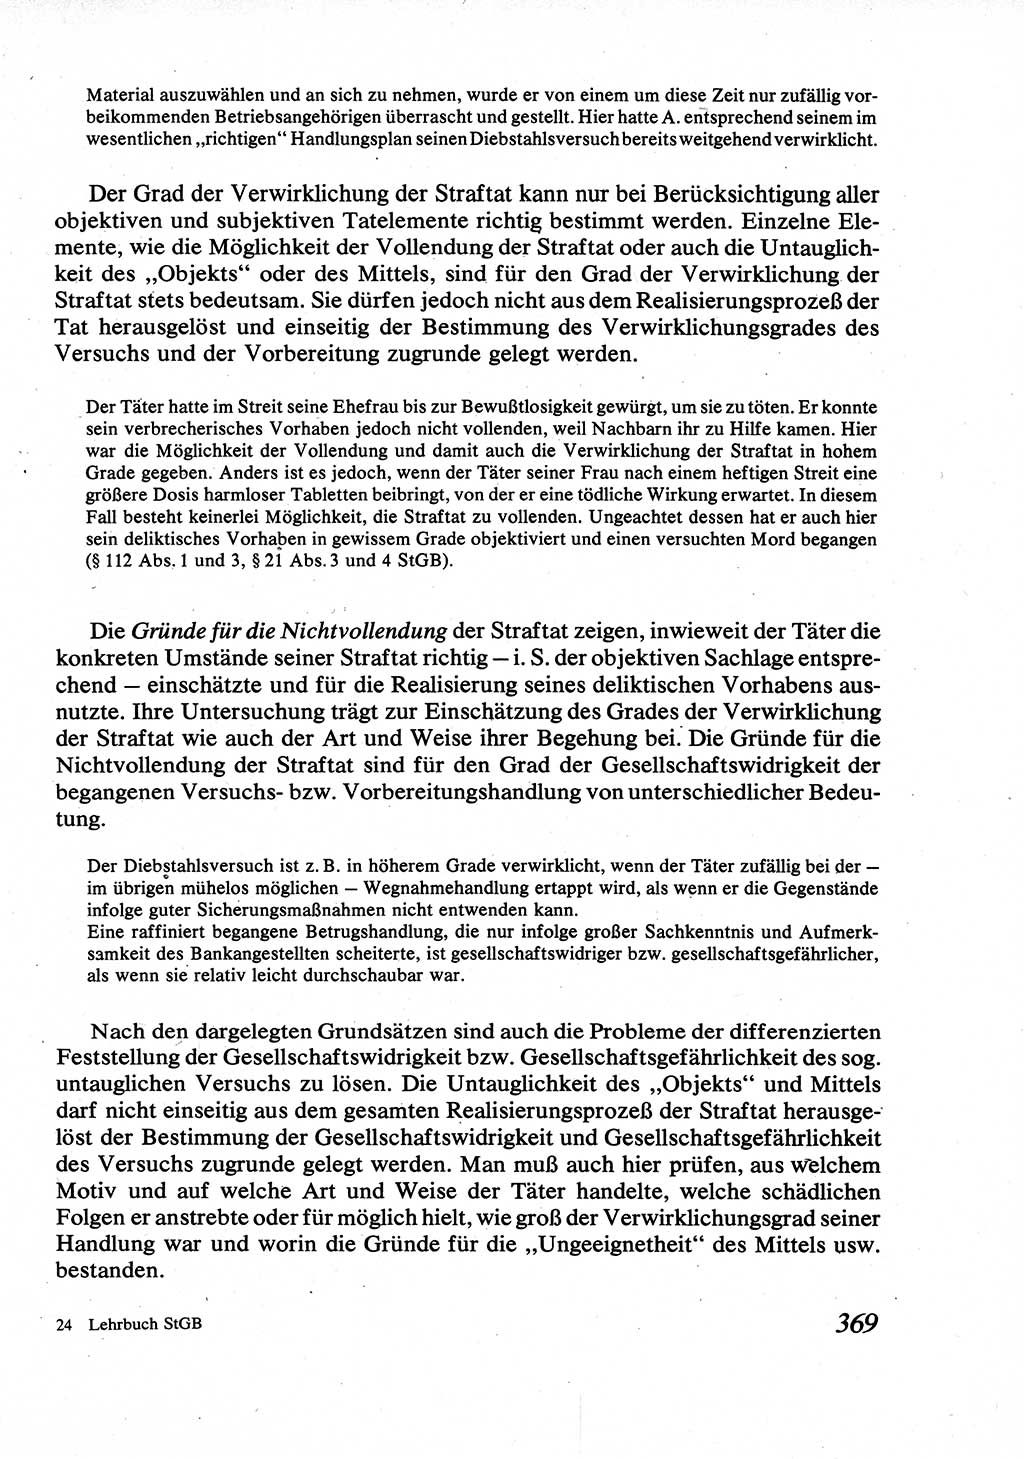 Strafrecht [Deutsche Demokratische Republik (DDR)], Allgemeiner Teil, Lehrbuch 1976, Seite 369 (Strafr. DDR AT Lb. 1976, S. 369)